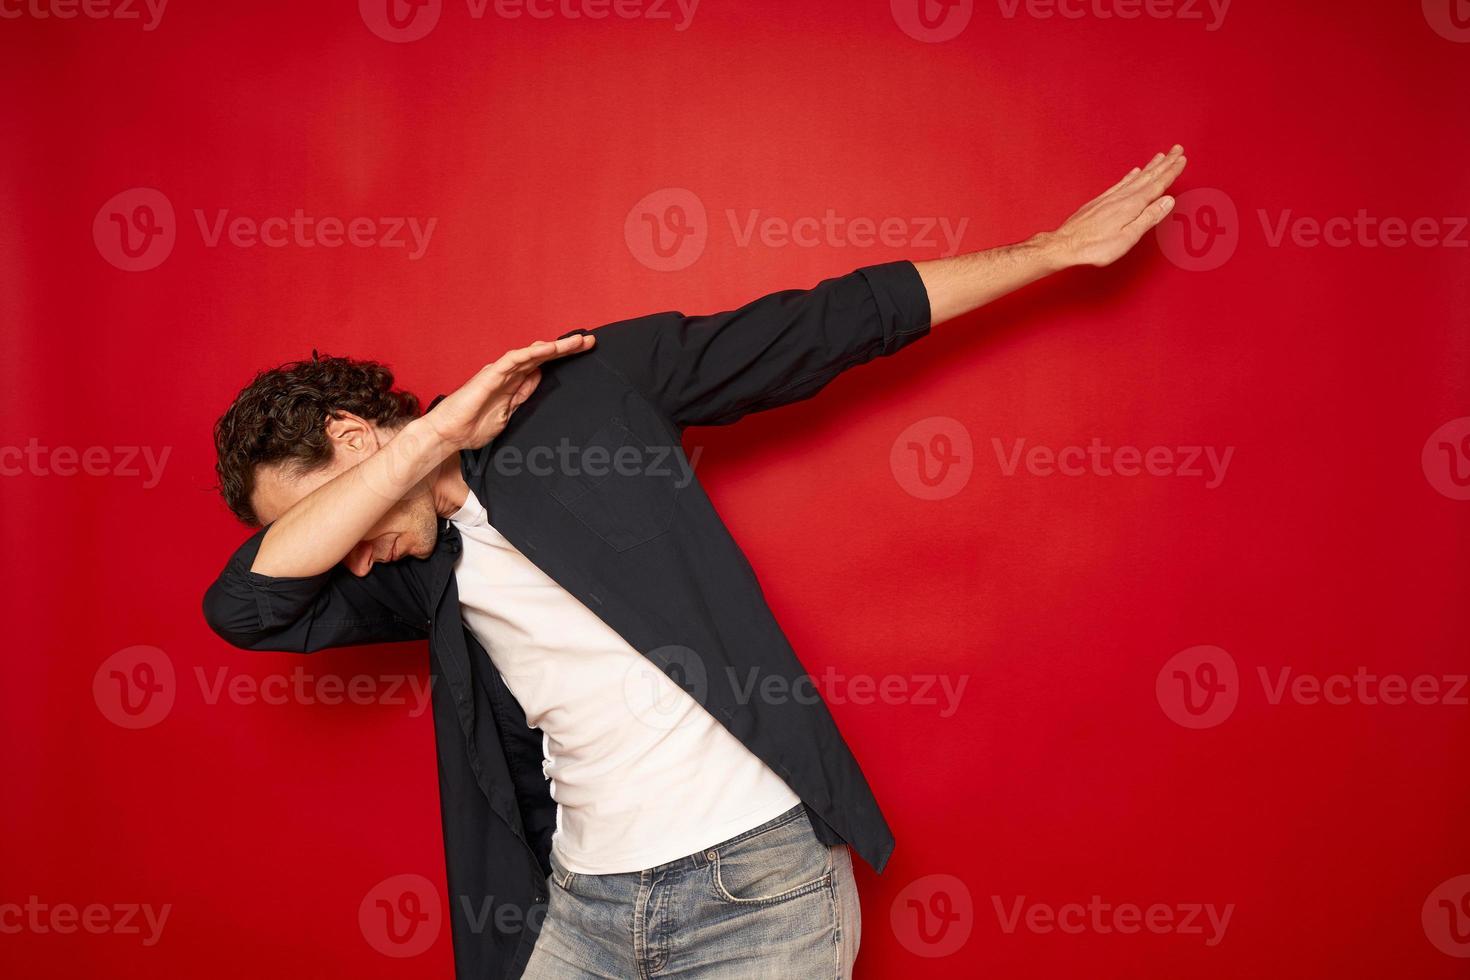 glad man i avslappnad gör gest av armar på tom röd studiobakgrund, rolig vit kille som duttar röra sig i internet meme pose och firar segern ha kul, dansskola eller triumfkoncept foto